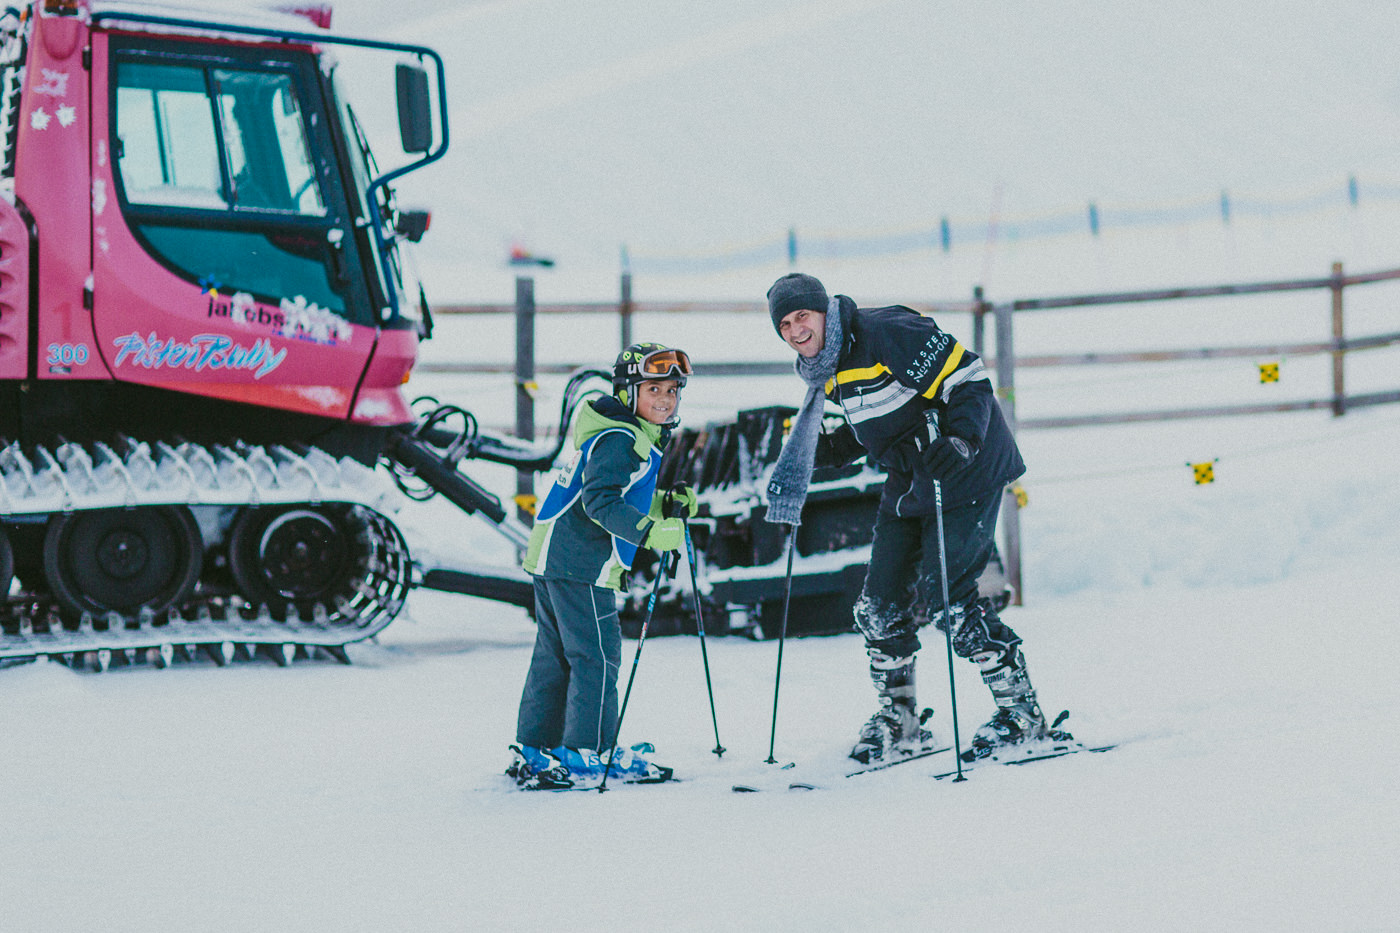 family skiing - fun